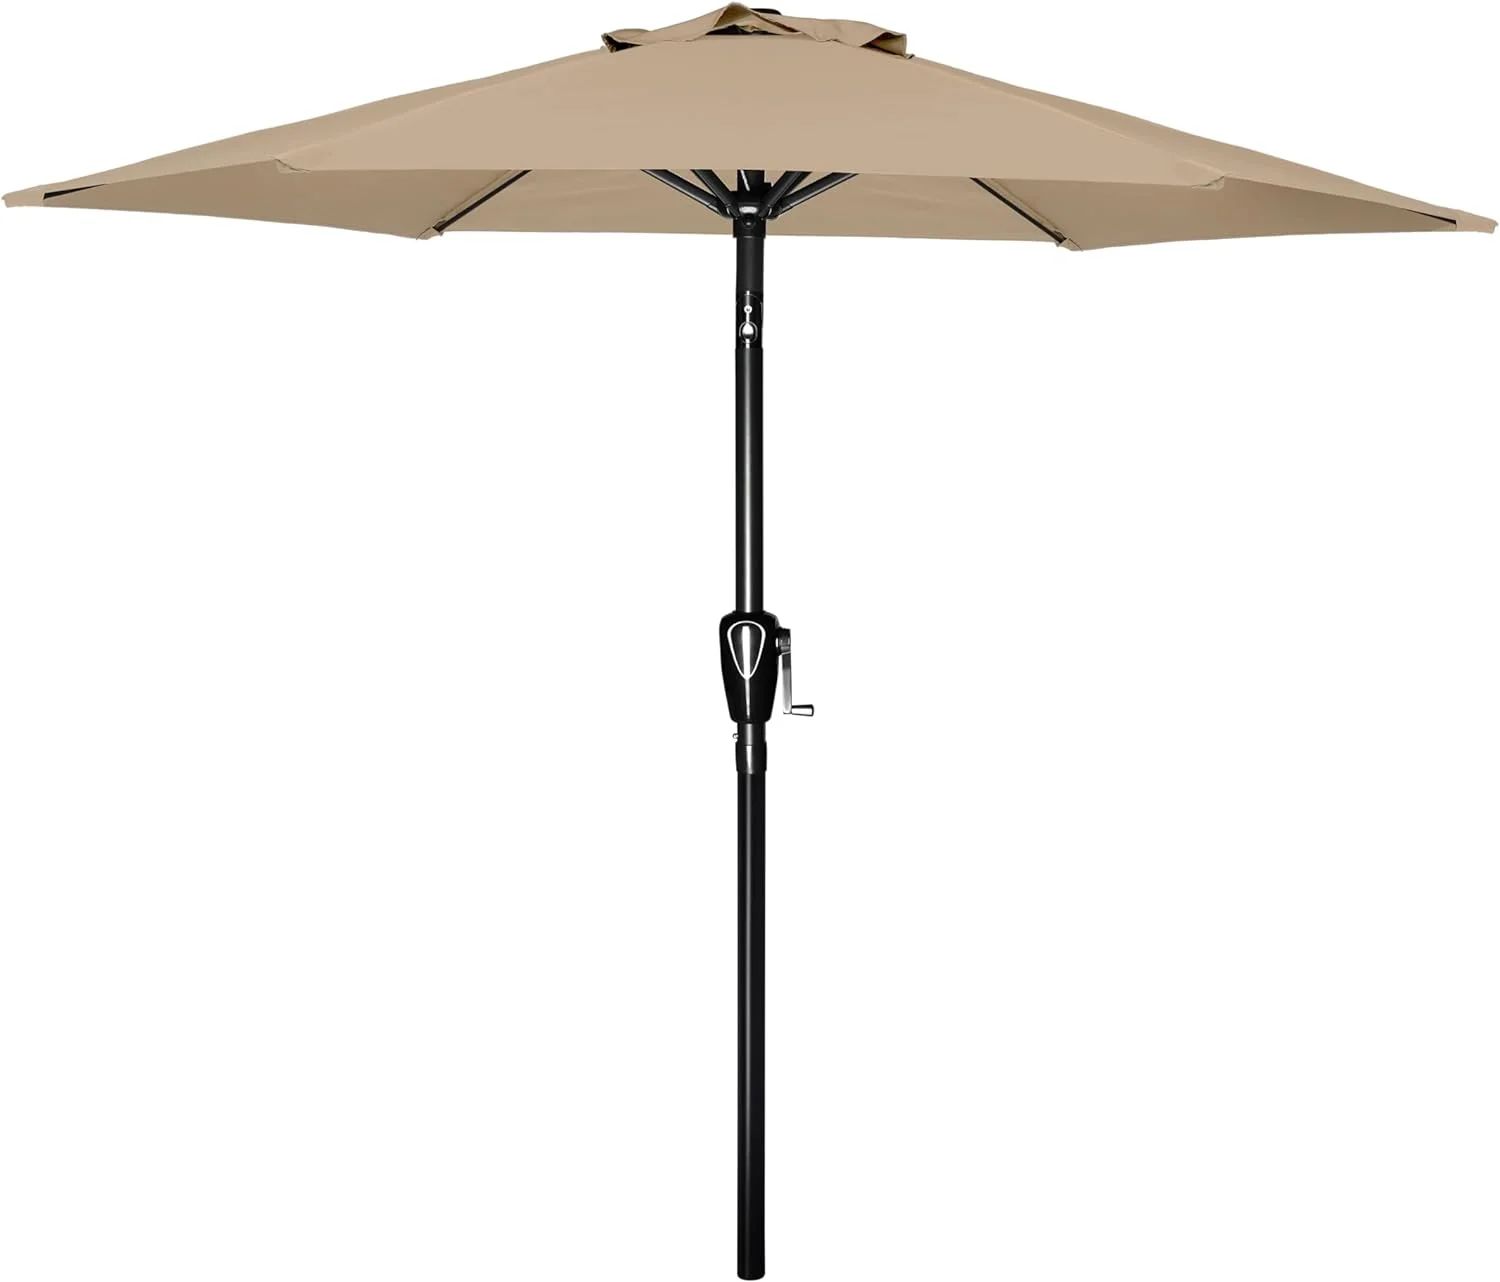 Simple Deluxe Patio Umbrella Outdoor Table Market Yard Umbrella | Walmart (US)